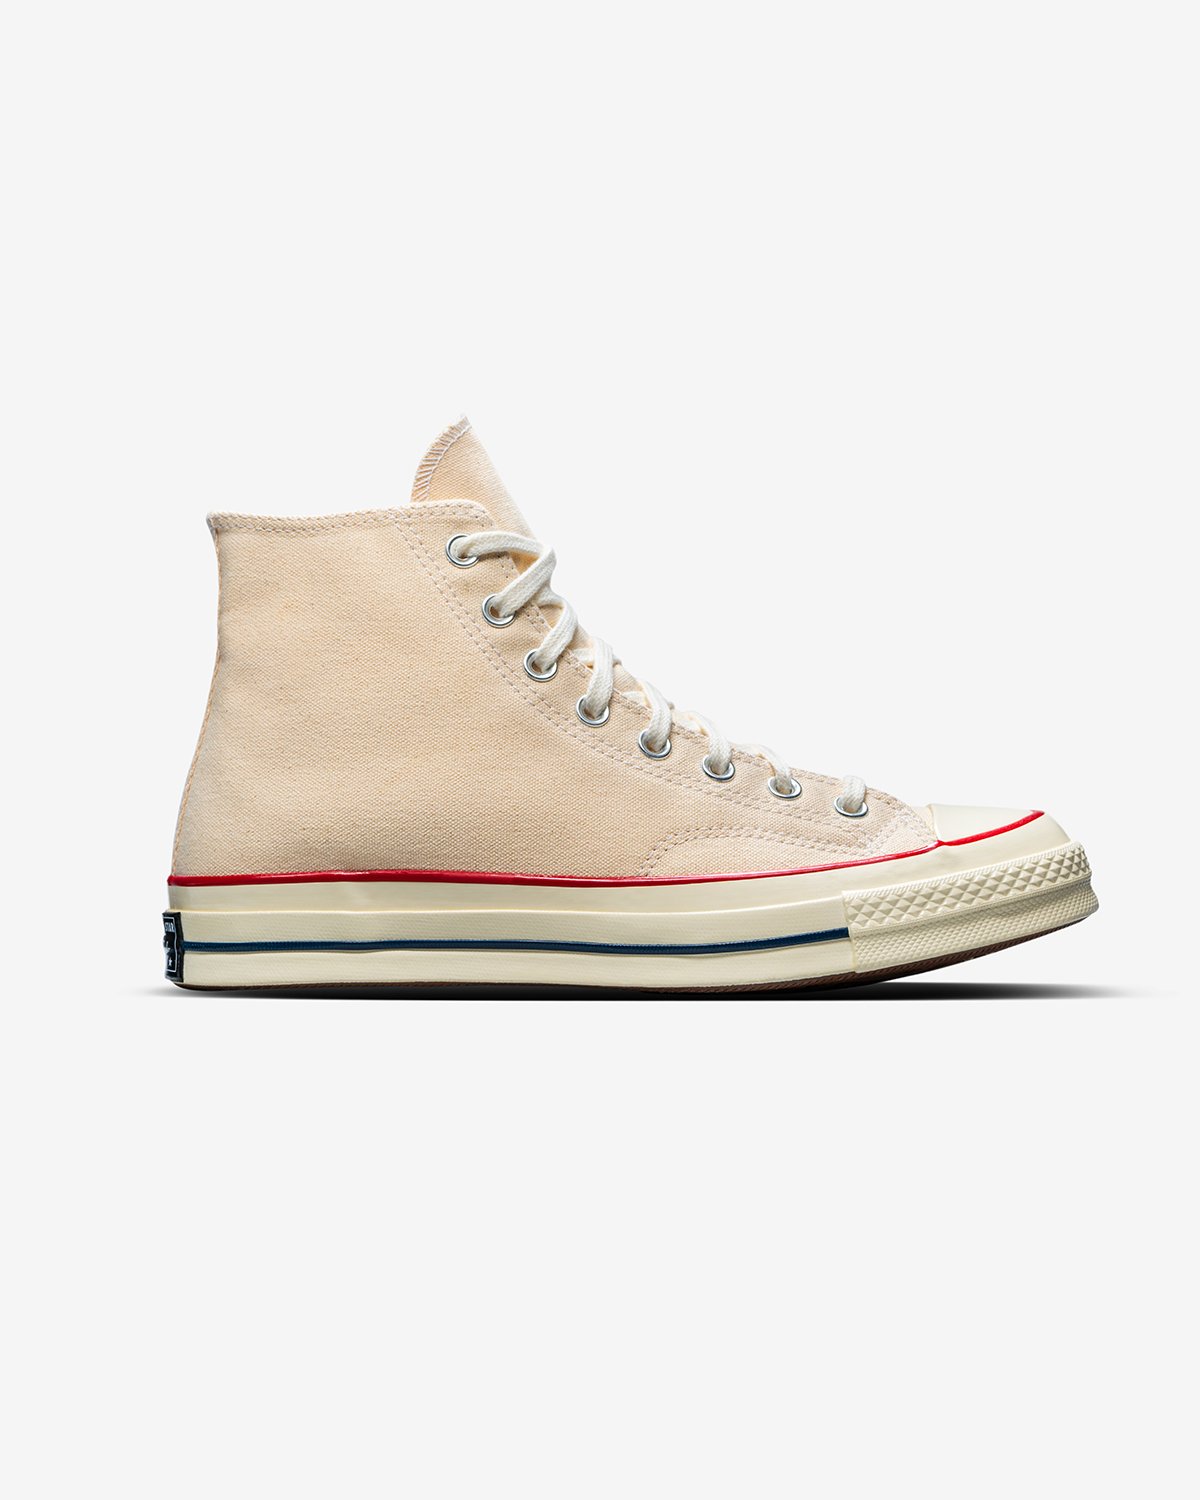 Converse - Chuck 70 Hi Parchment/Garnet/Egret - Footwear - White - Image 1